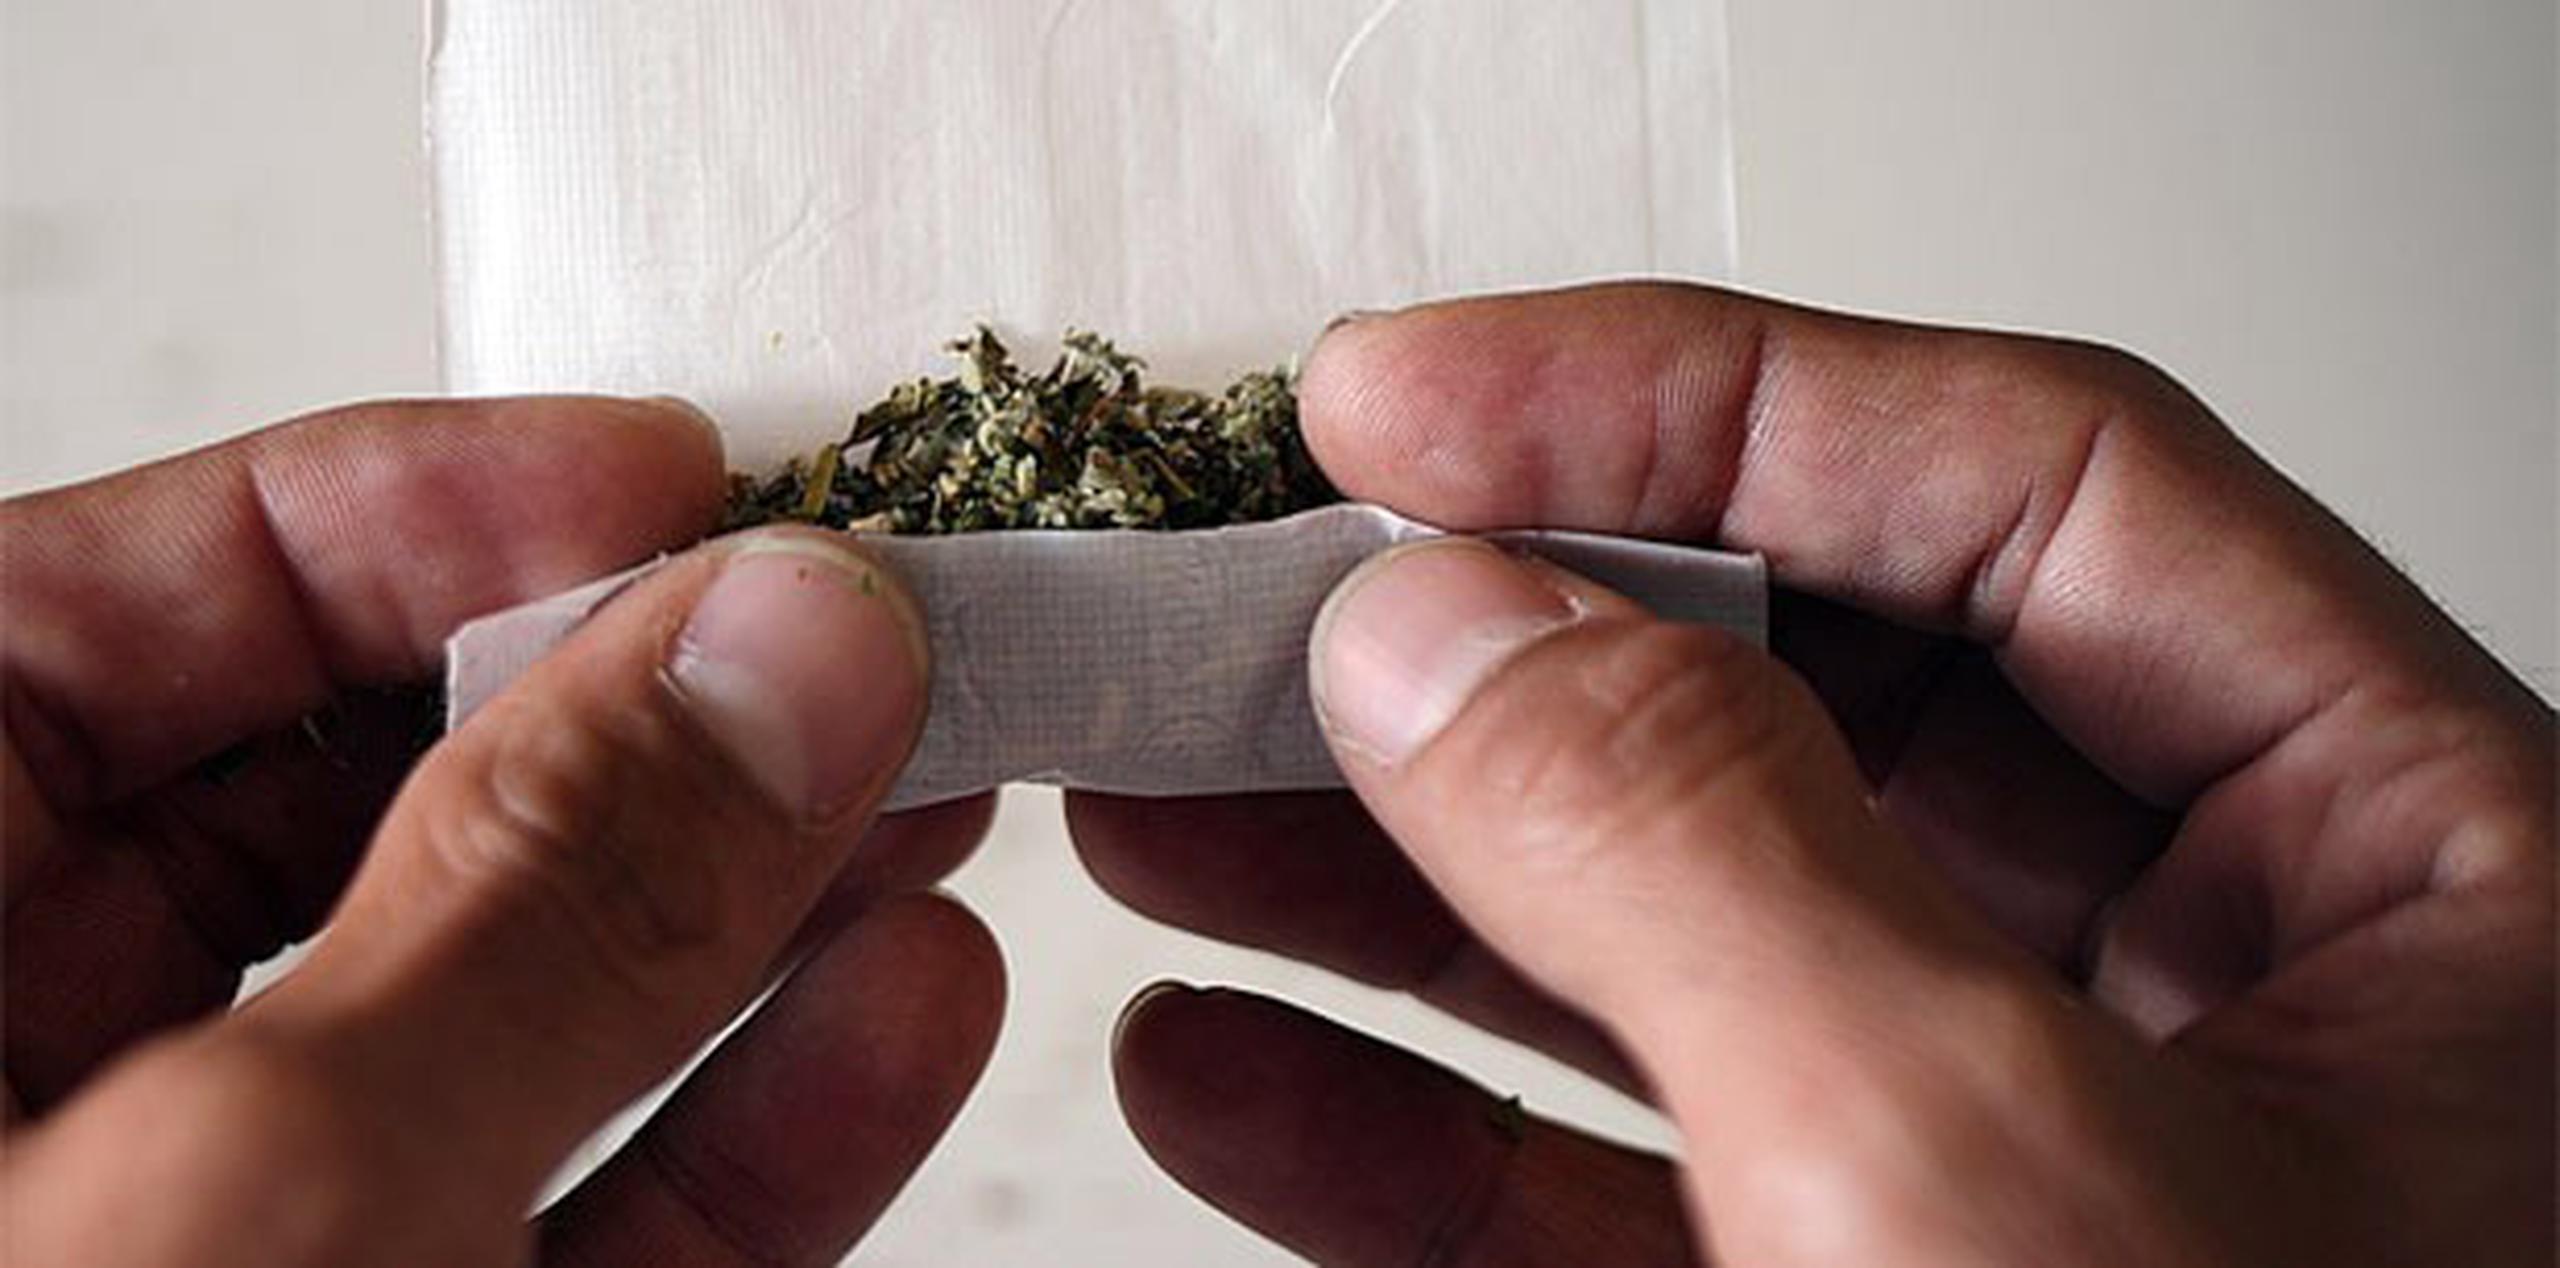 La demanda es el más reciente reto legal a la legalización de la marihuana. (Archivo)